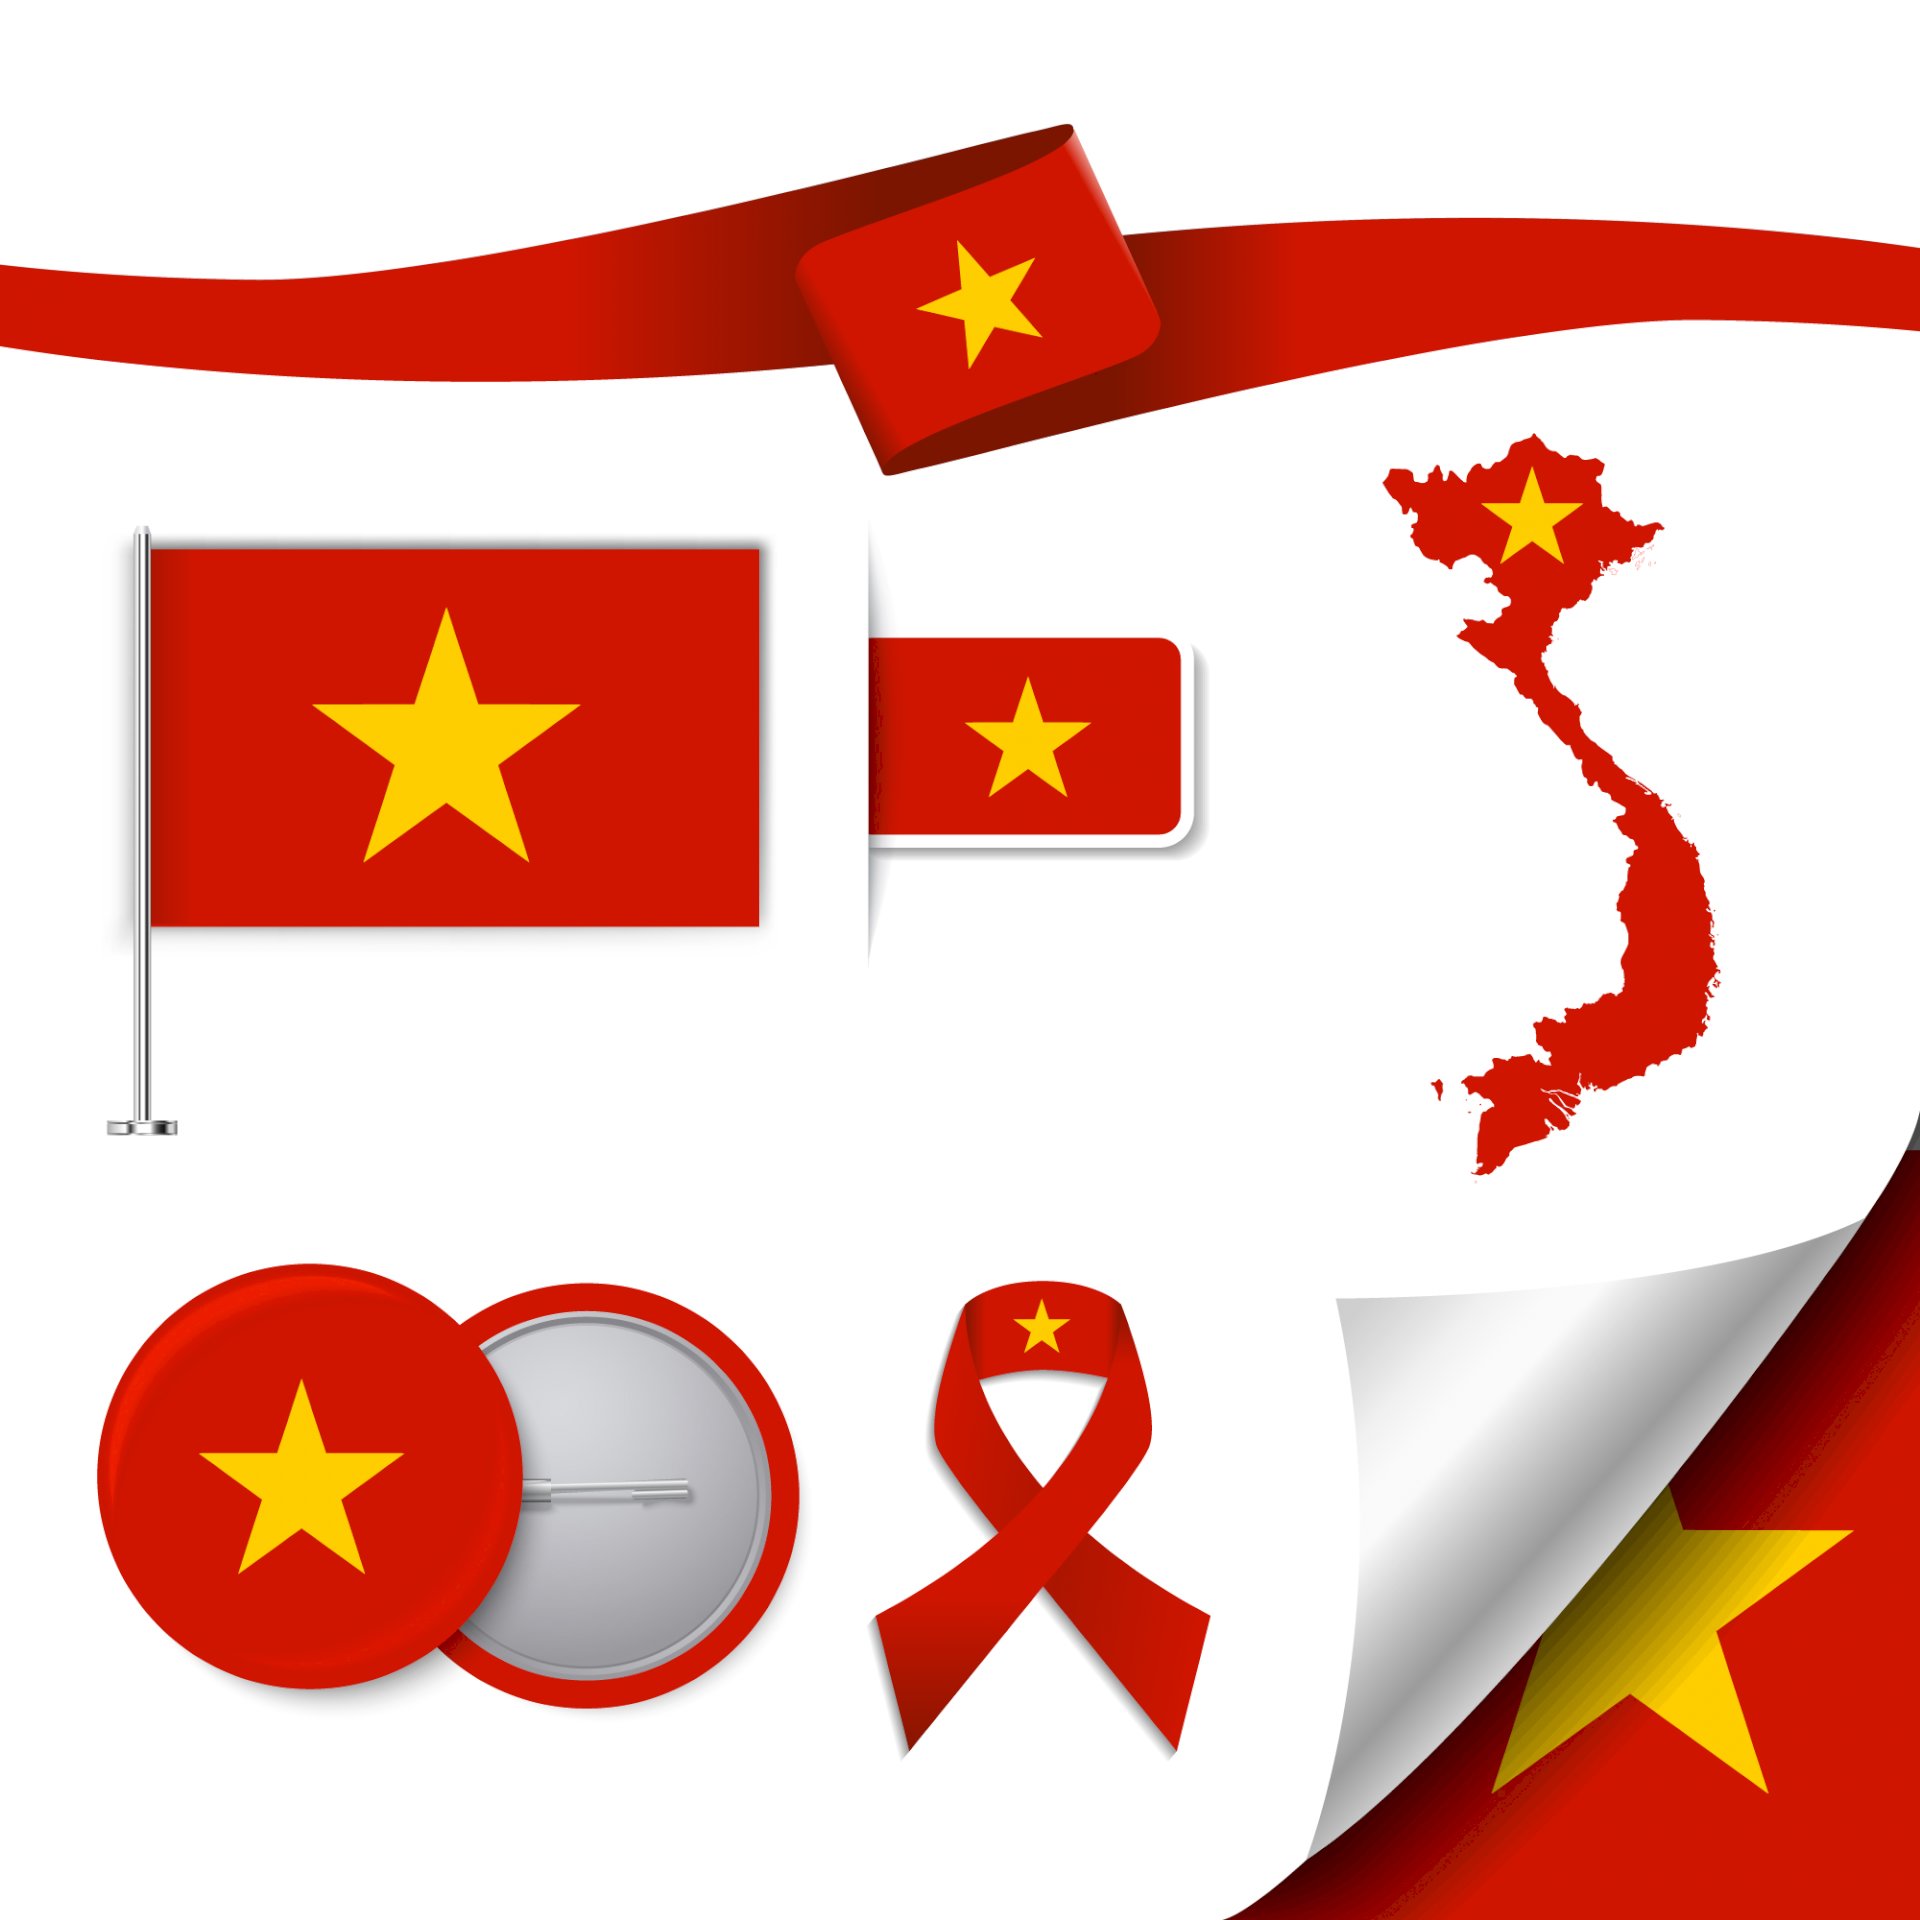 Vector logo quốc kỳ Việt Nam: Logo quốc kỳ Việt Nam là biểu tượng truyền thống của đất nước ta. Nhưng tại năm 2024, chúng ta đã có được bản nâng cấp của vector logo quốc kỳ, mang đến một diện mạo mới, trẻ trung và hiện đại hơn. Đây đích thị là một trong những biểu tượng uy tín, đại diện cho sự phát triển và ước vọng của Việt Nam.